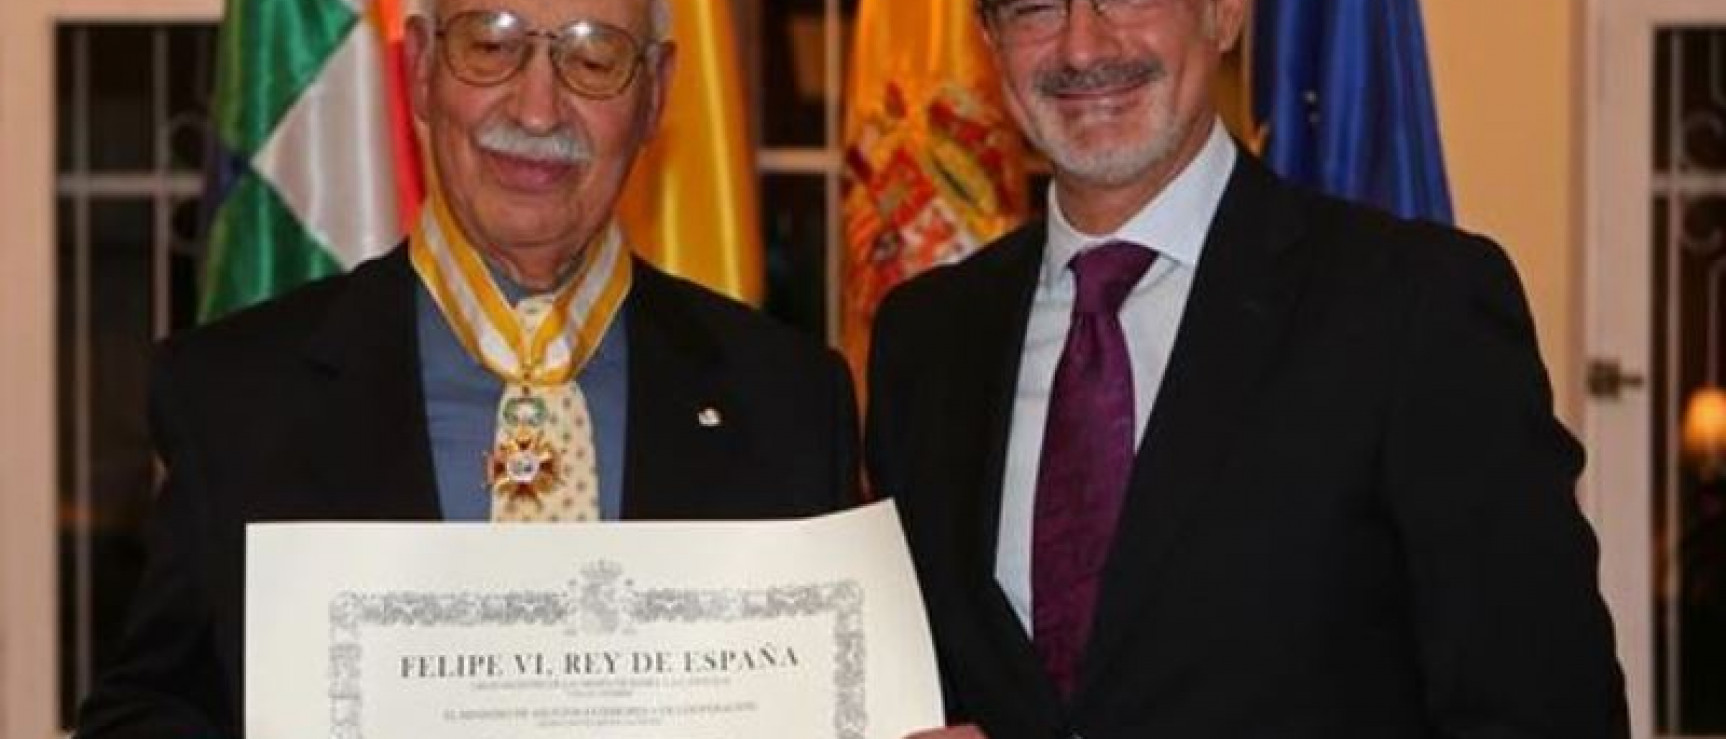 El acto se ha celebrado en la Embajada de España en Bolivia. Foto. EFE.